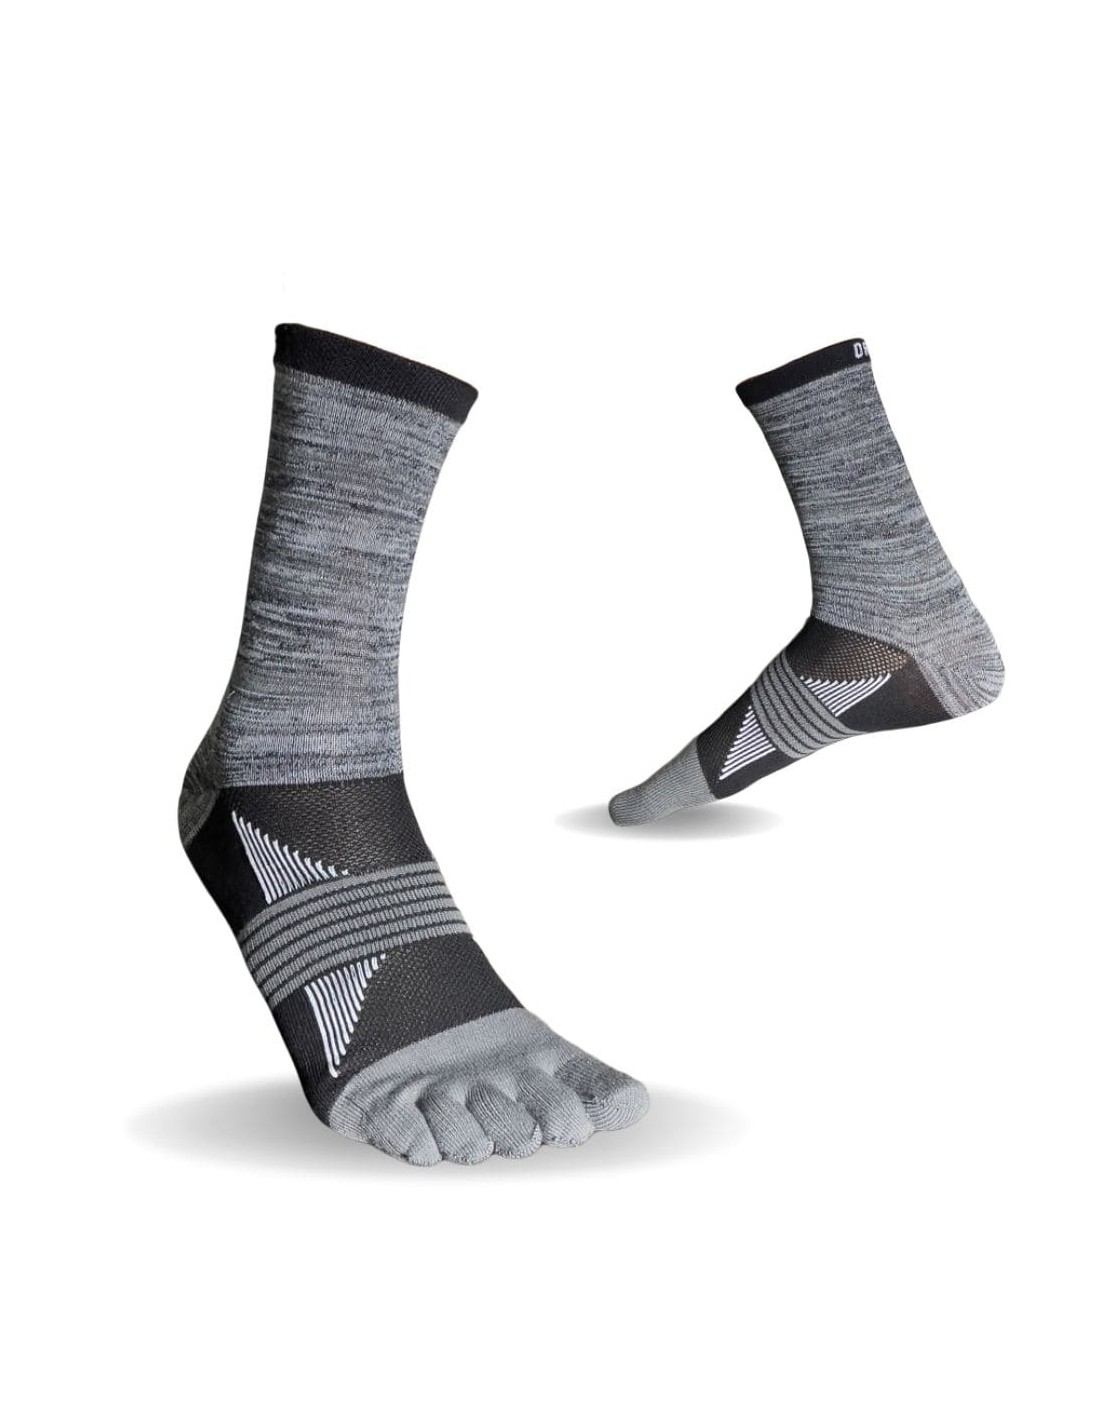 Finger Ortles - 5 Hohe Sand Trailrunning-Socken